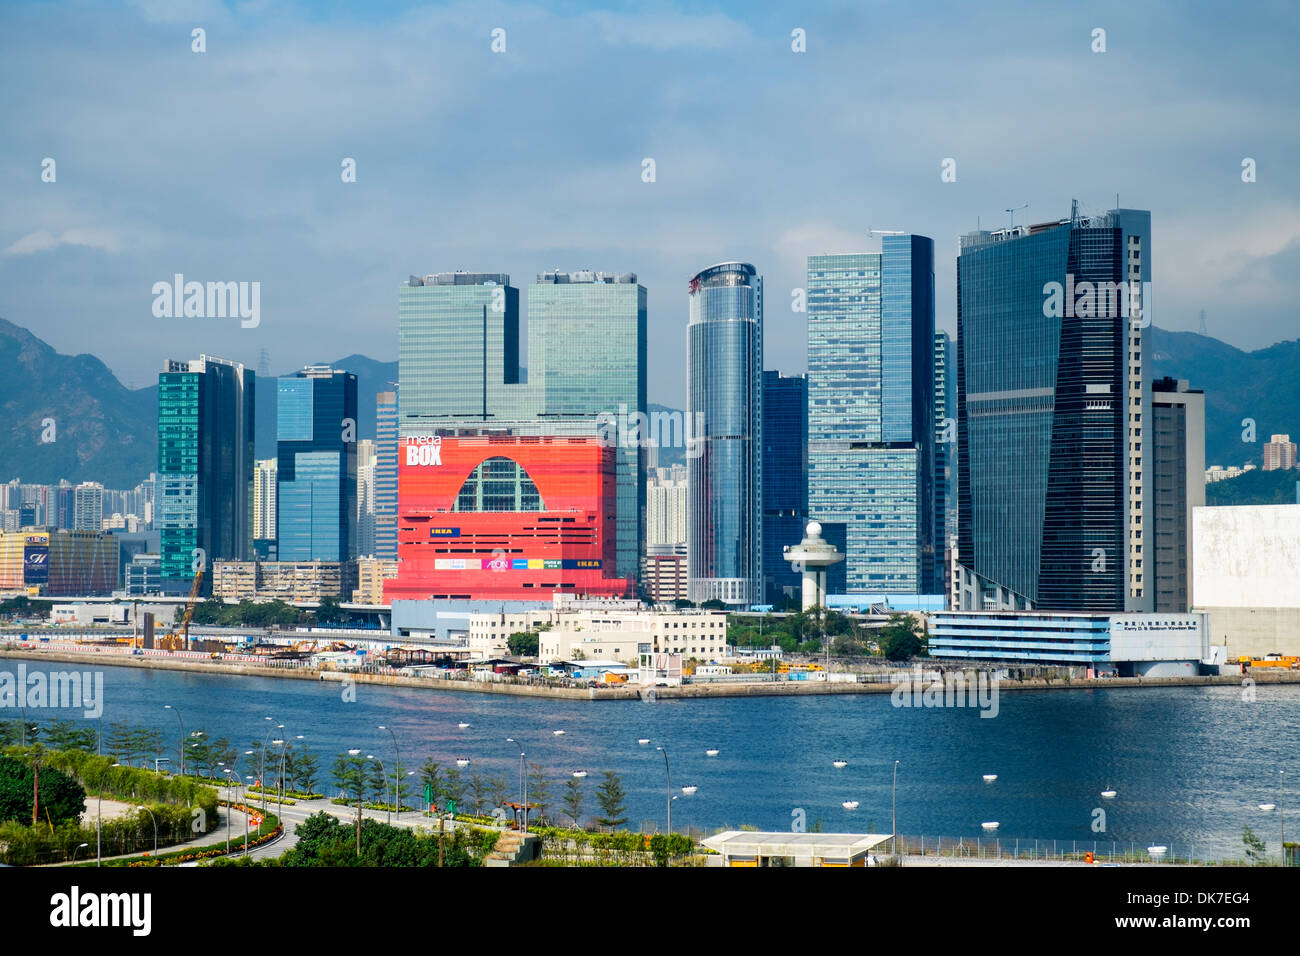 Vista del paisaje urbano denso y rascacielos en Hong Kong Kowloon Bay Foto de stock